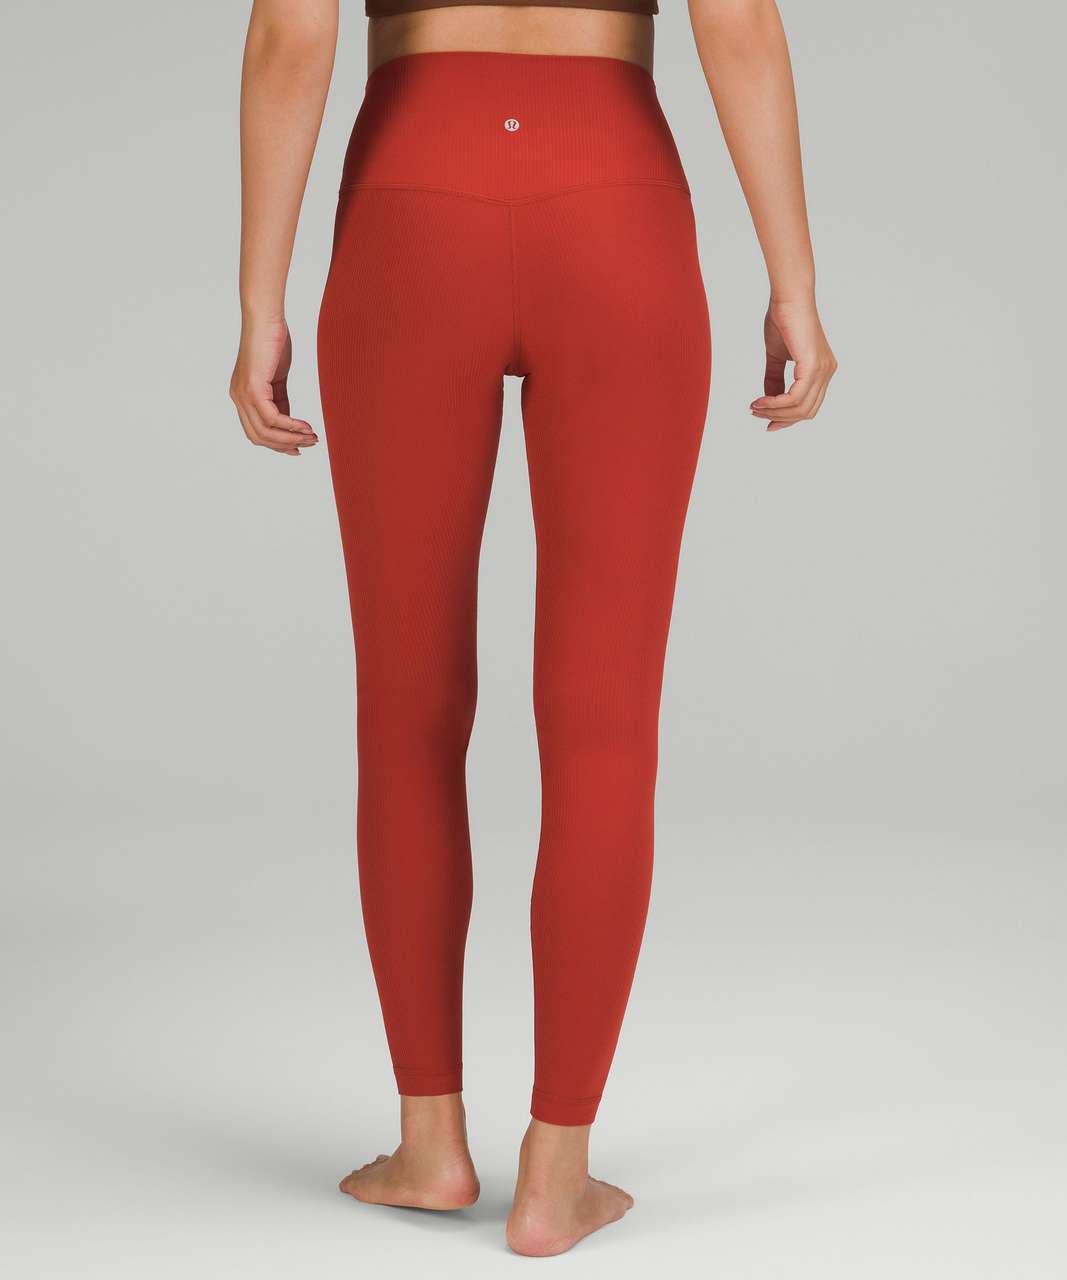 Lululemon Align High-Rise Pant 28 Red Merlot Leggings Women's